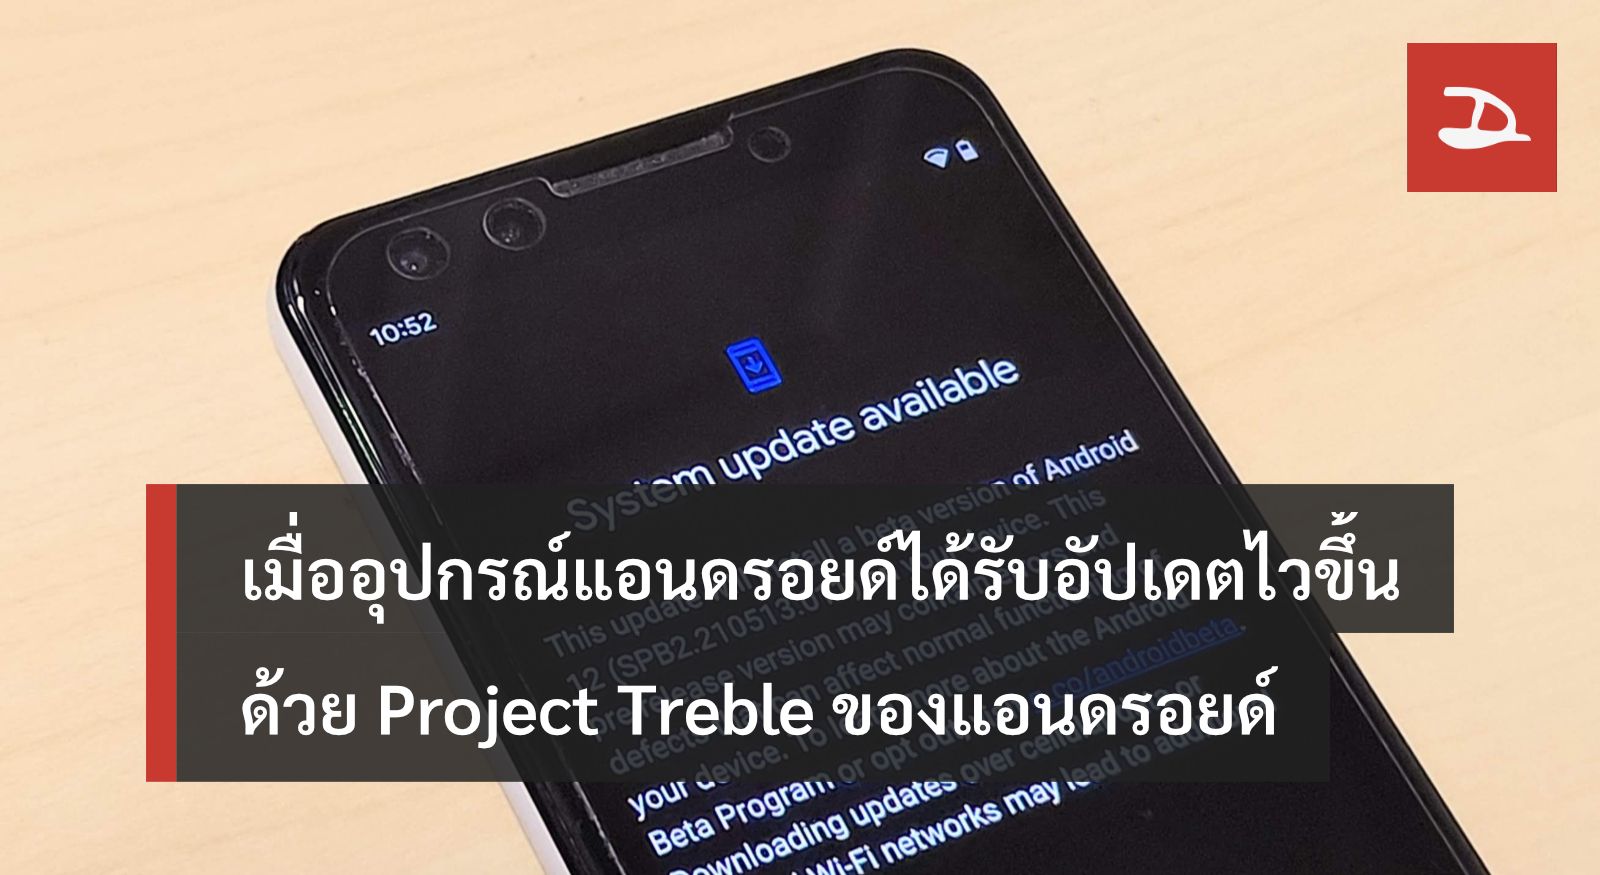 เมื่ออุปกรณ์แอนดรอยด์สามารถอัปเดตเวอร์ชันใหม่ได้ไวขึ้นด้วย Project Treble